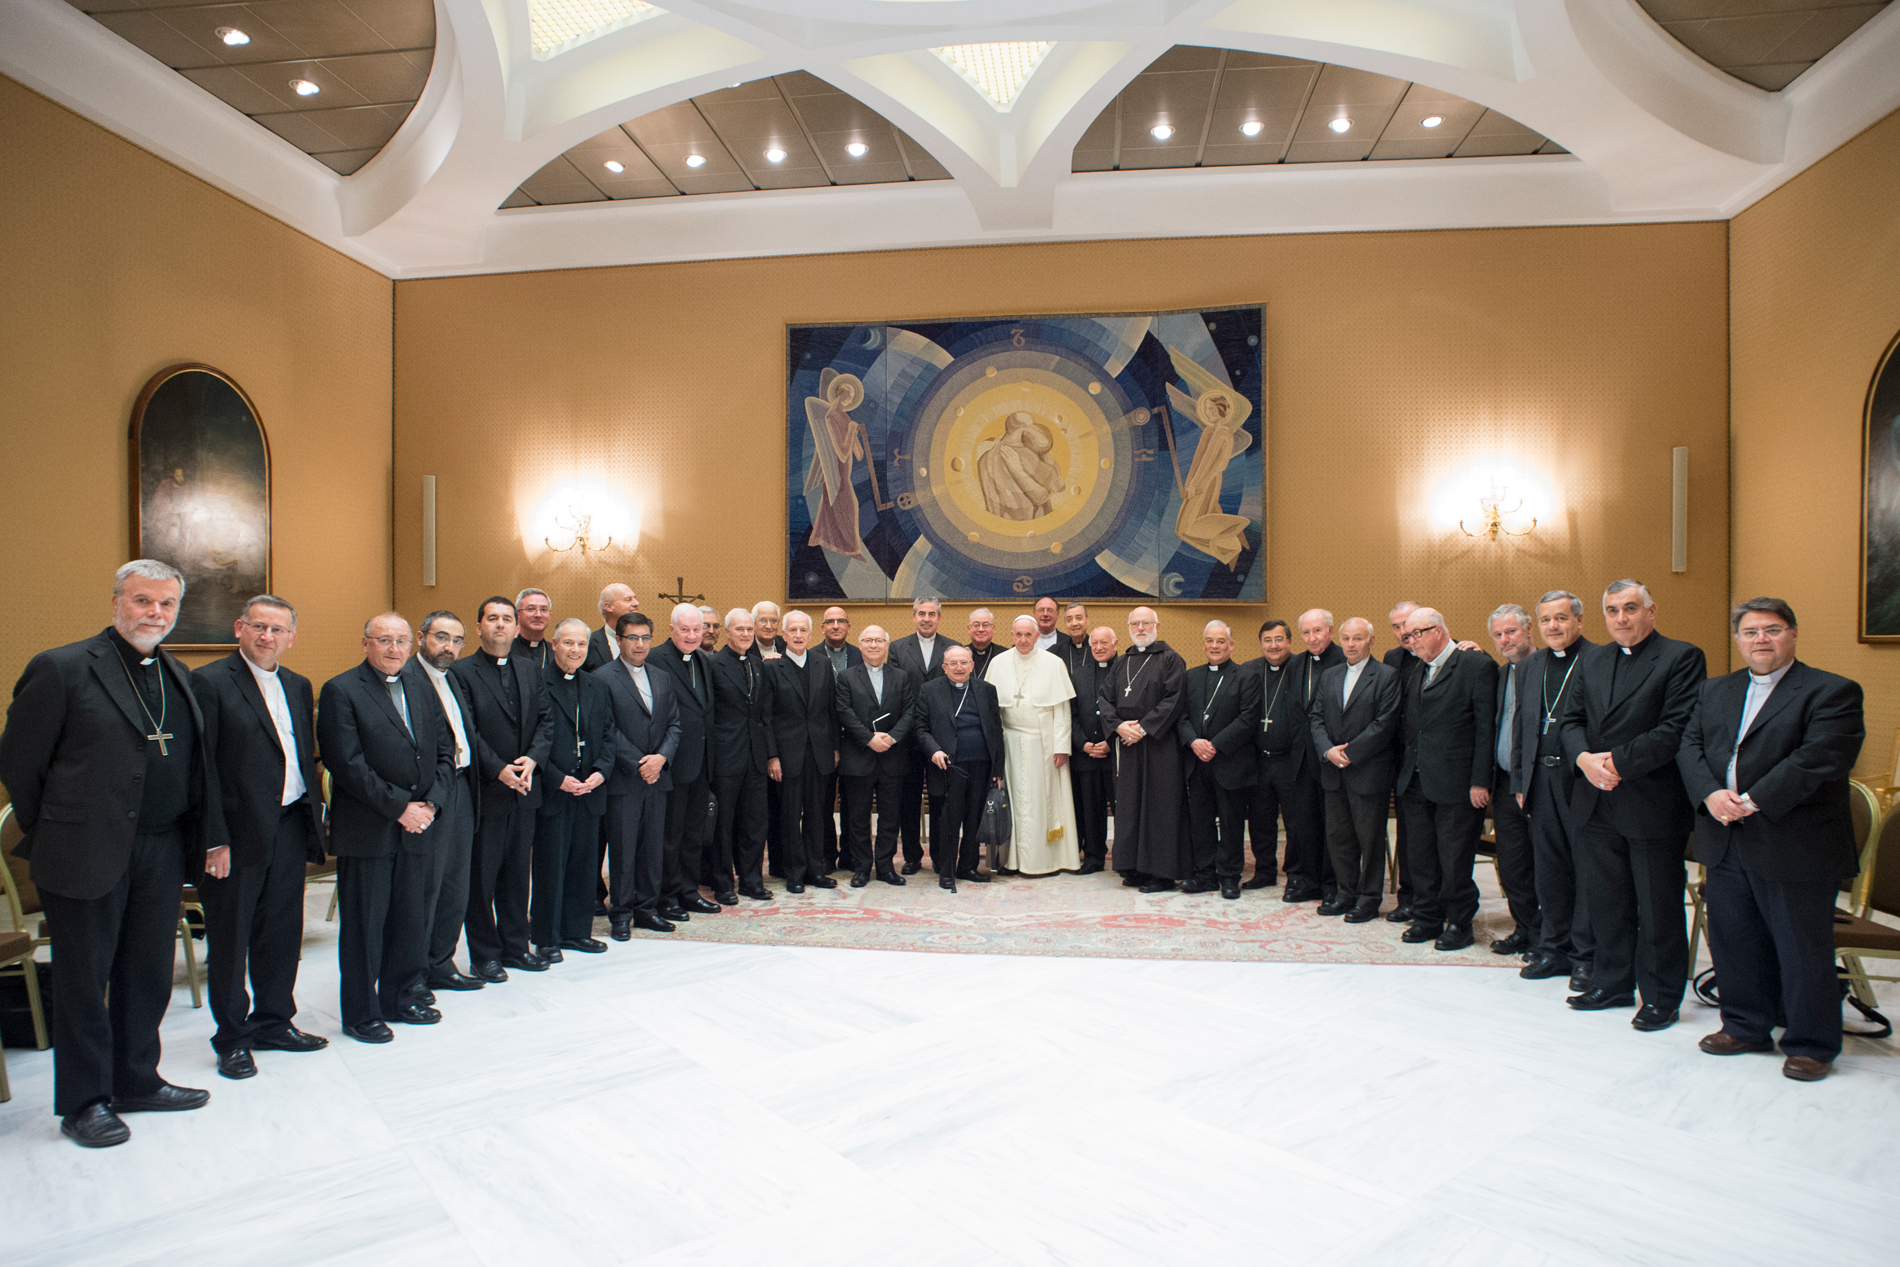 34 Obispos chilenos renunciaron ante el papa Francisco